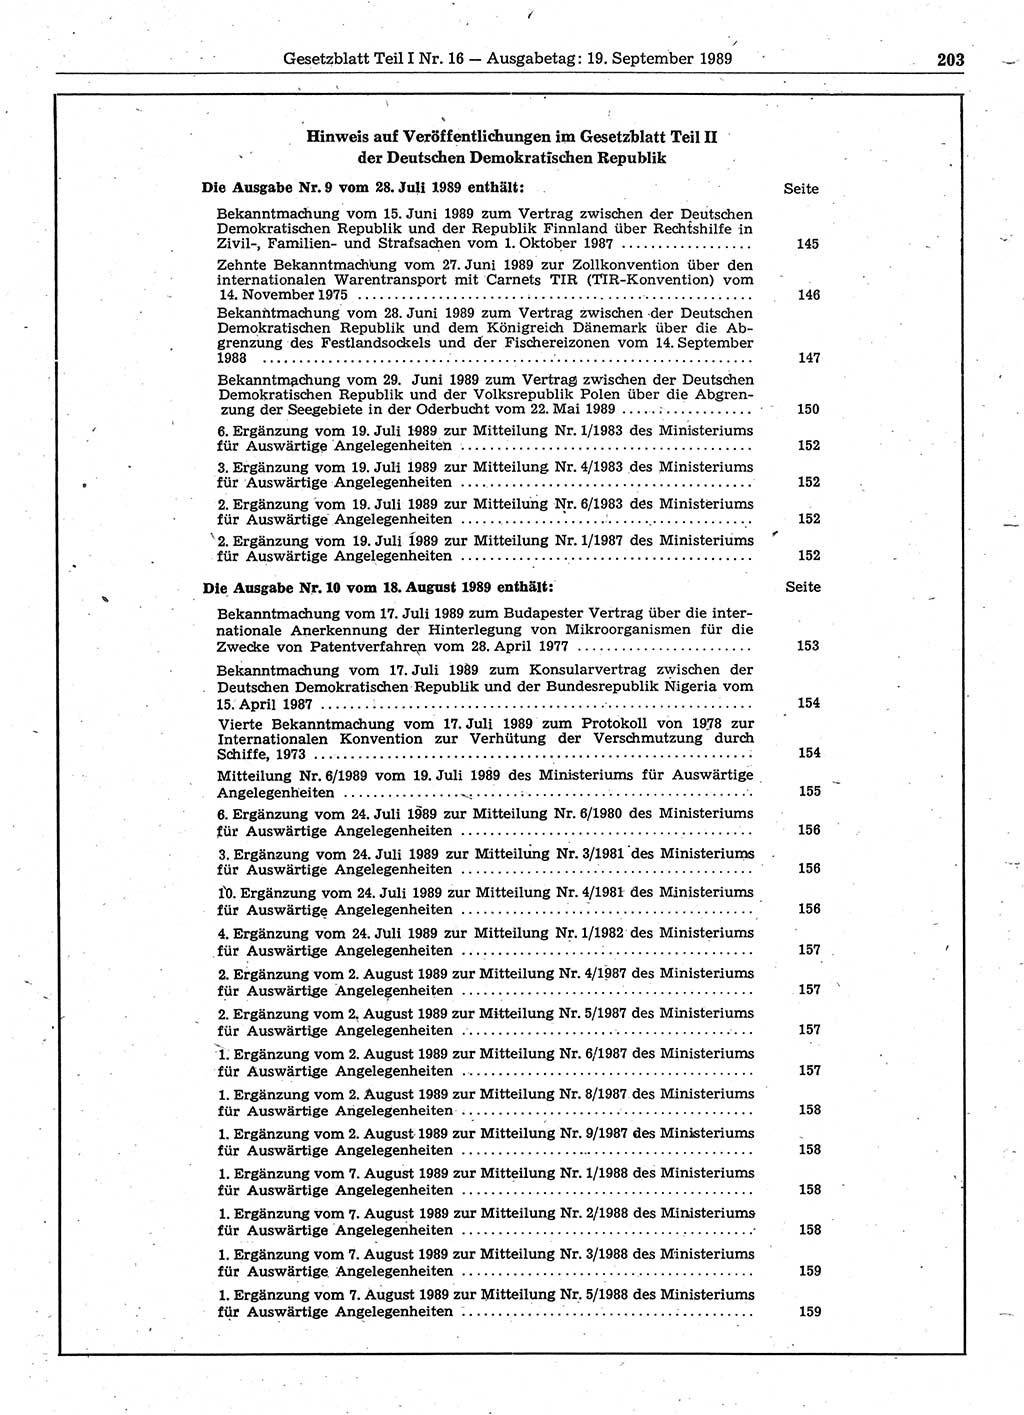 Gesetzblatt (GBl.) der Deutschen Demokratischen Republik (DDR) Teil Ⅰ 1989, Seite 203 (GBl. DDR Ⅰ 1989, S. 203)